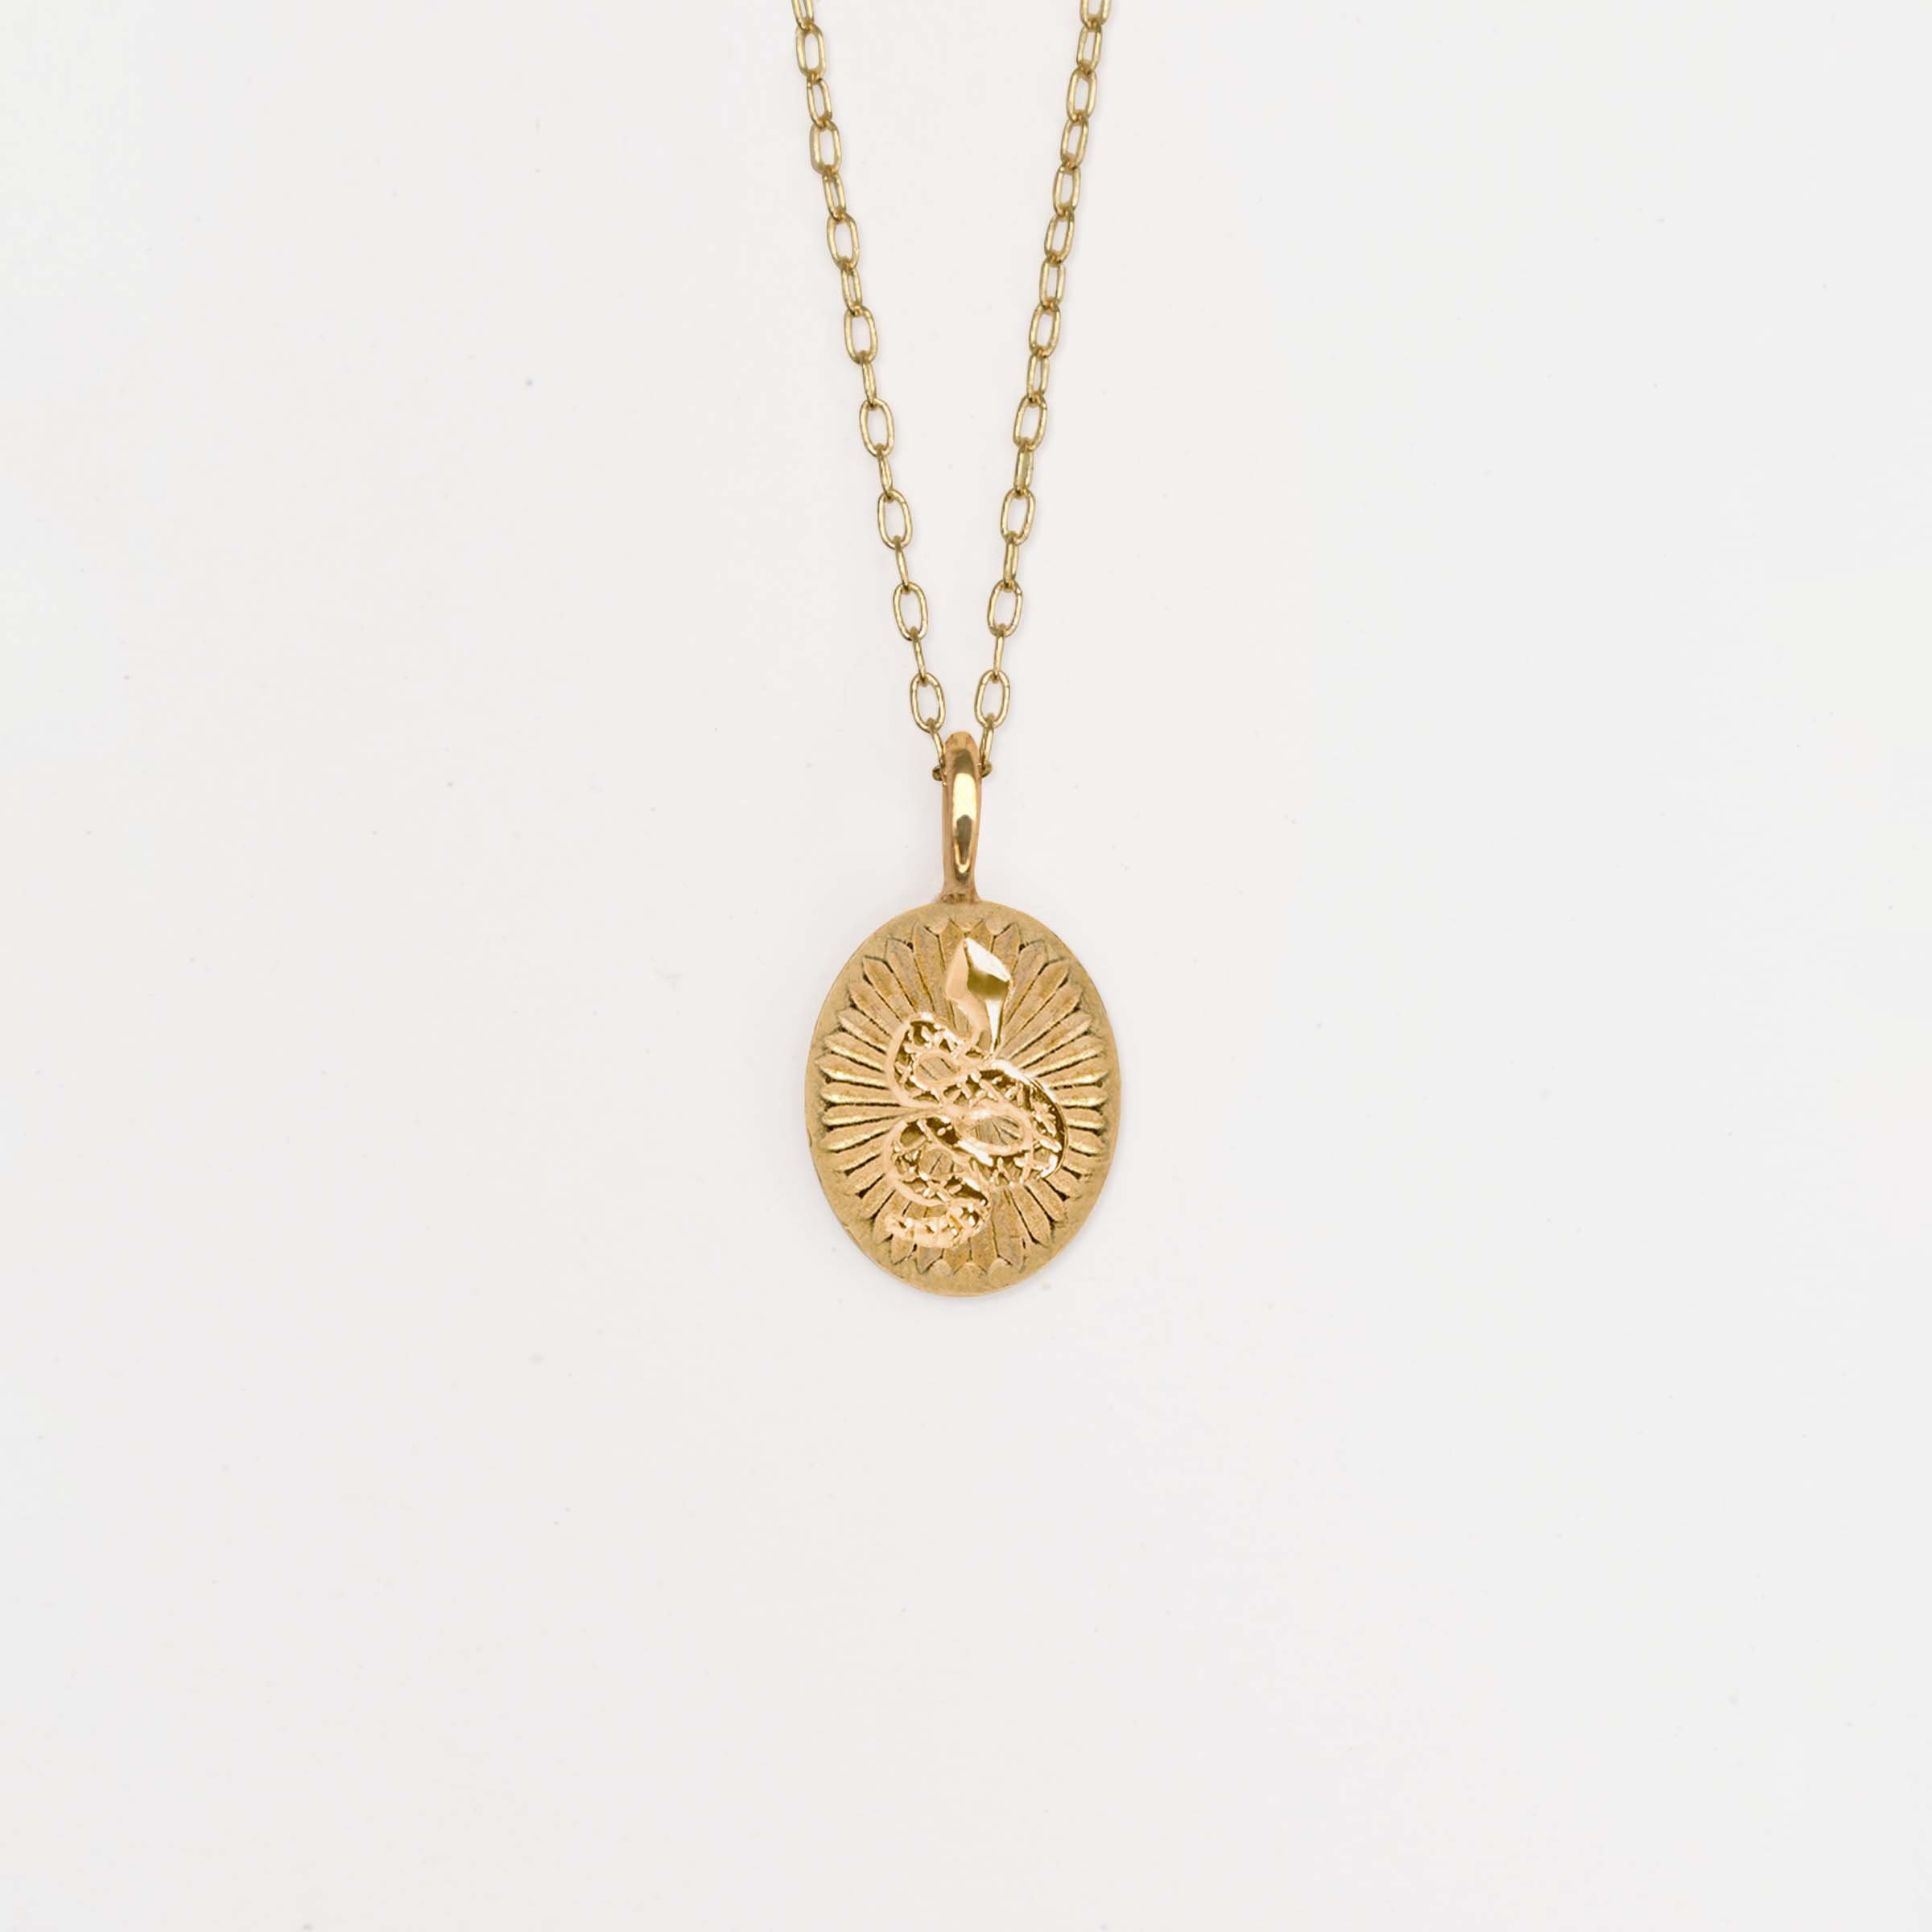 Serpiente Gold Necklace.jpg